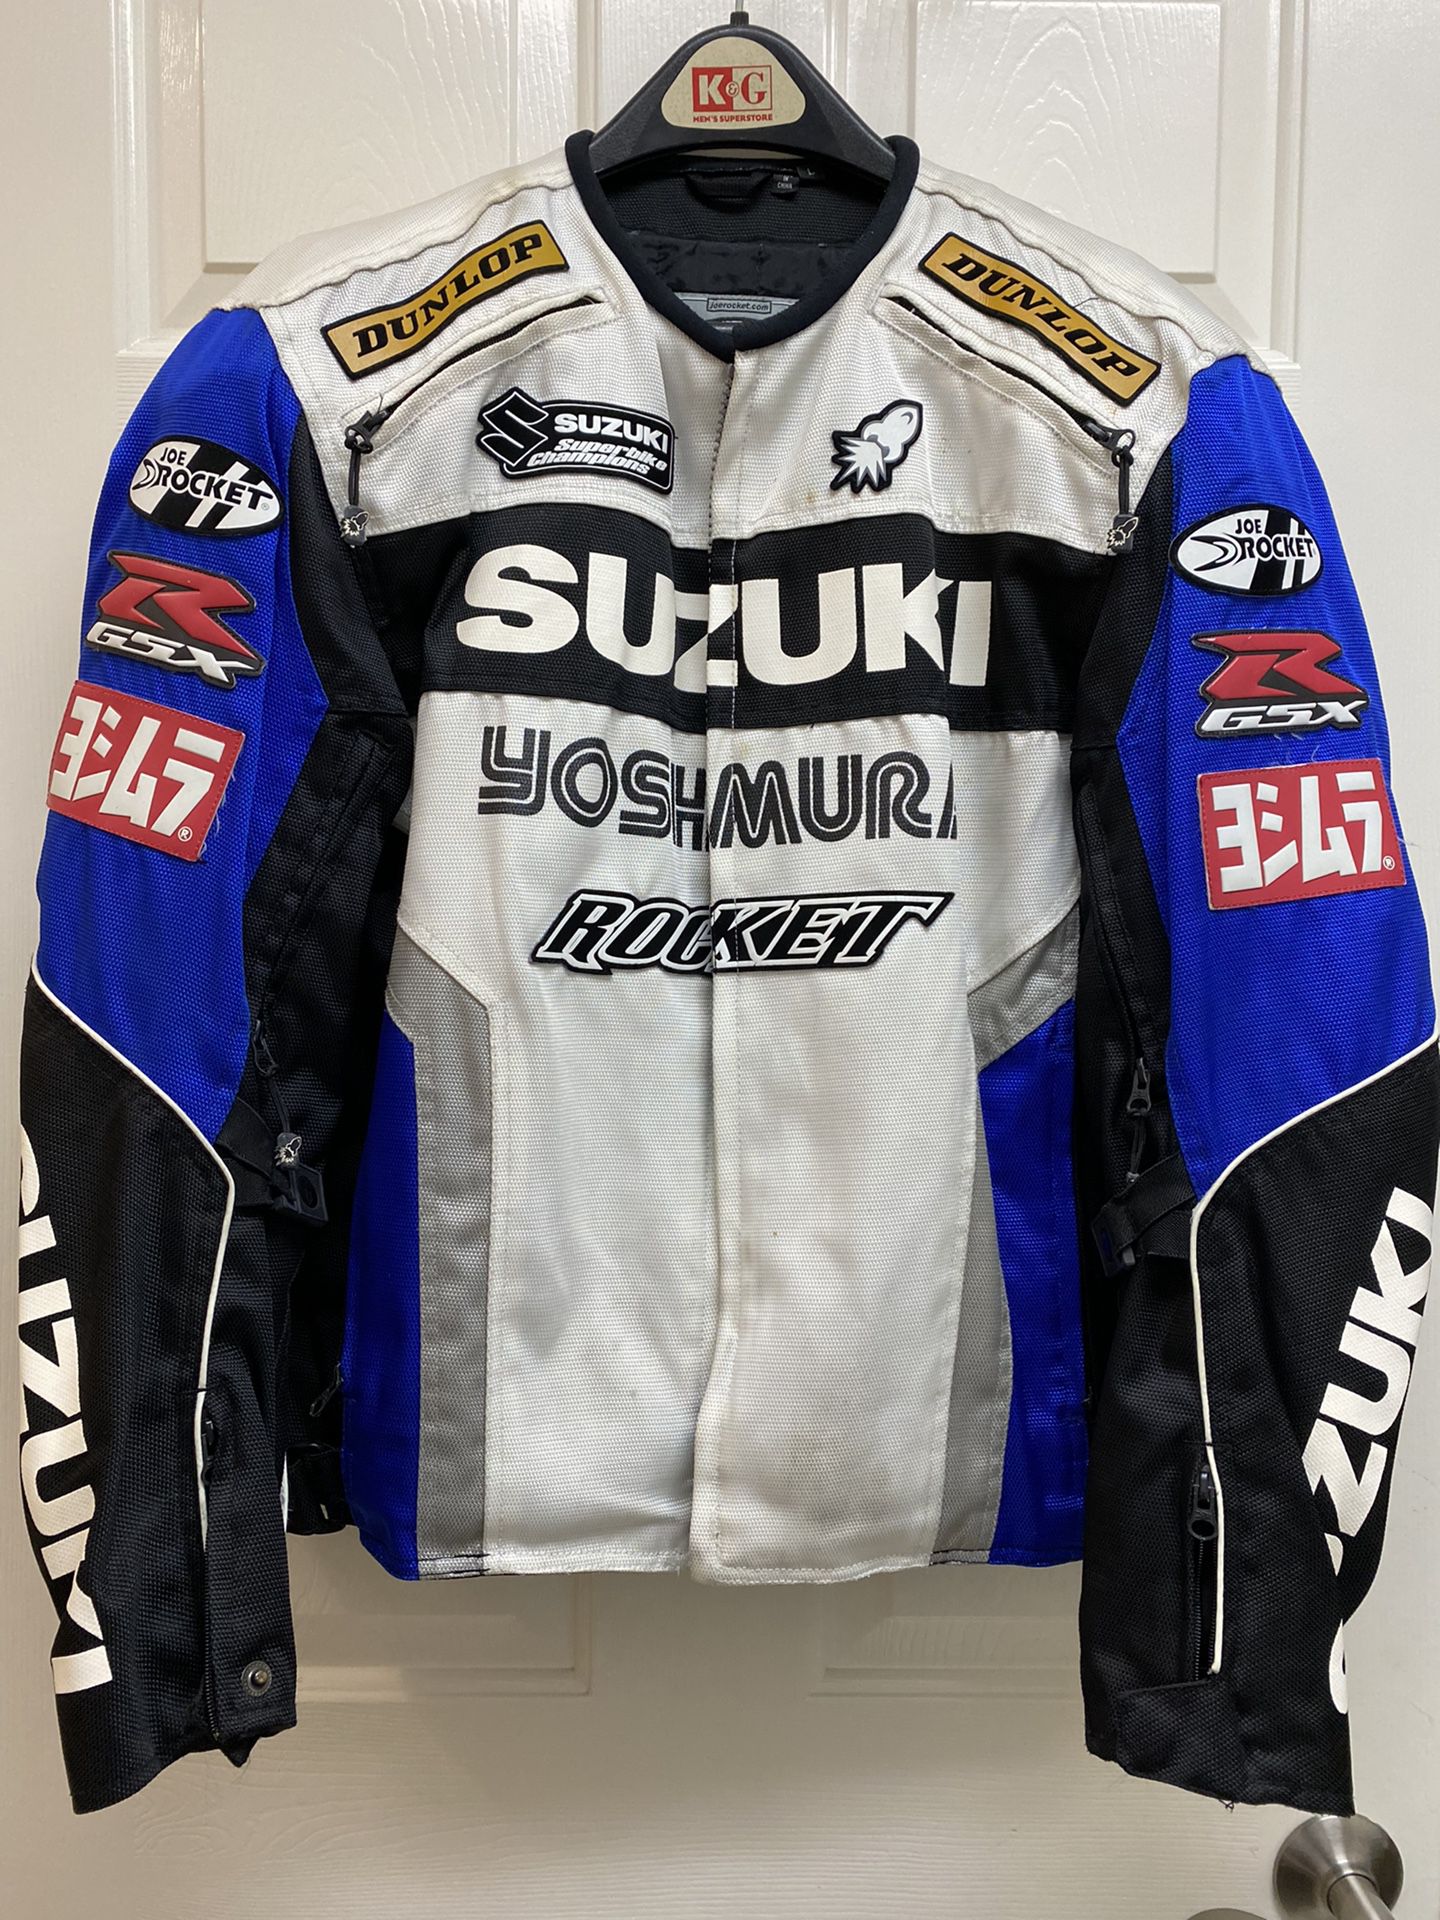 Suzuki GSXR Riding jacket And Crew Shirt 